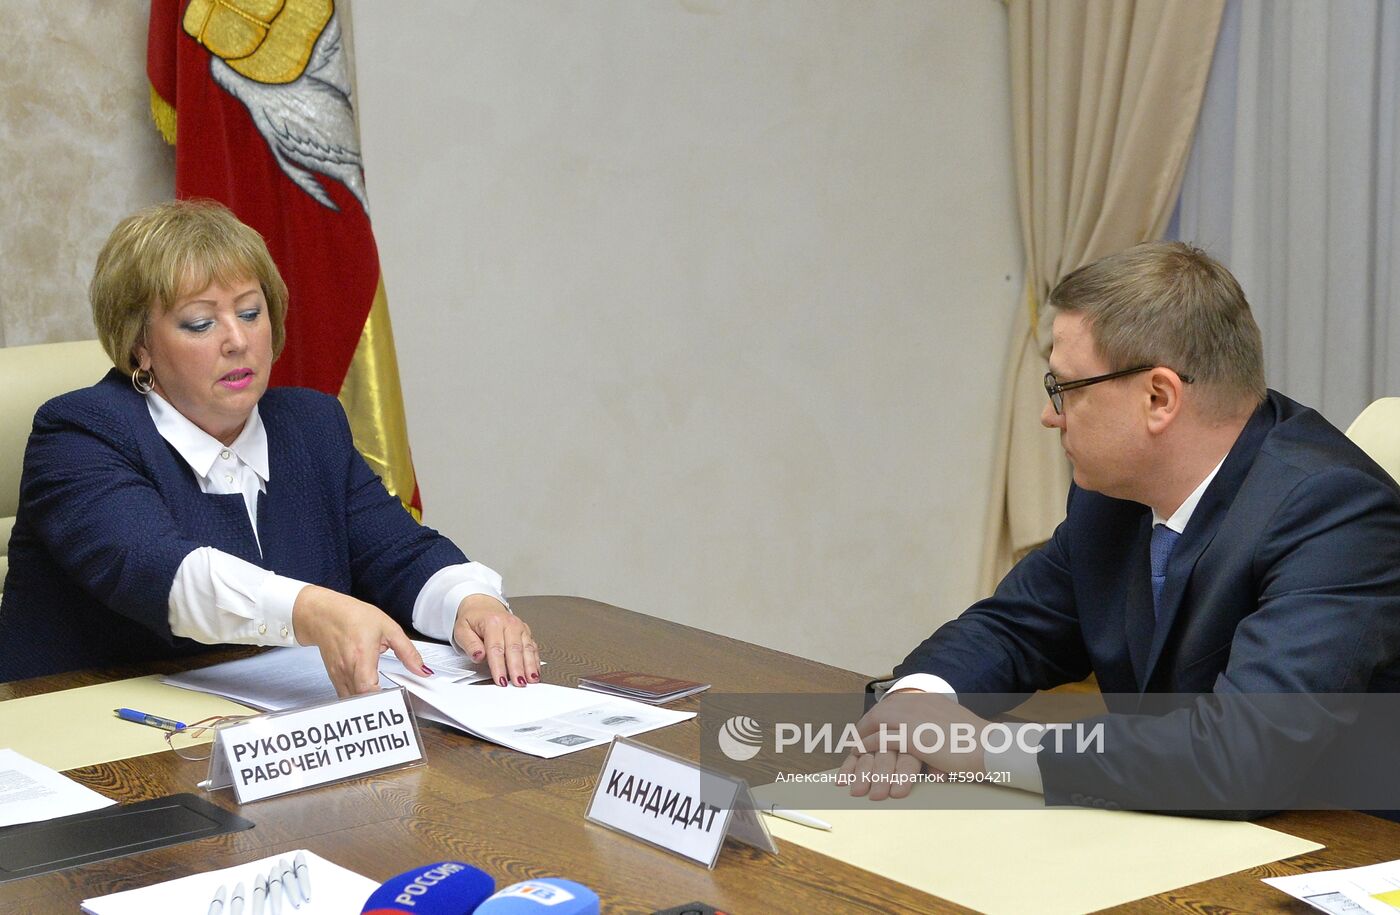 А. Текслер подал документы для участия в выборах губернатора Челябинской области